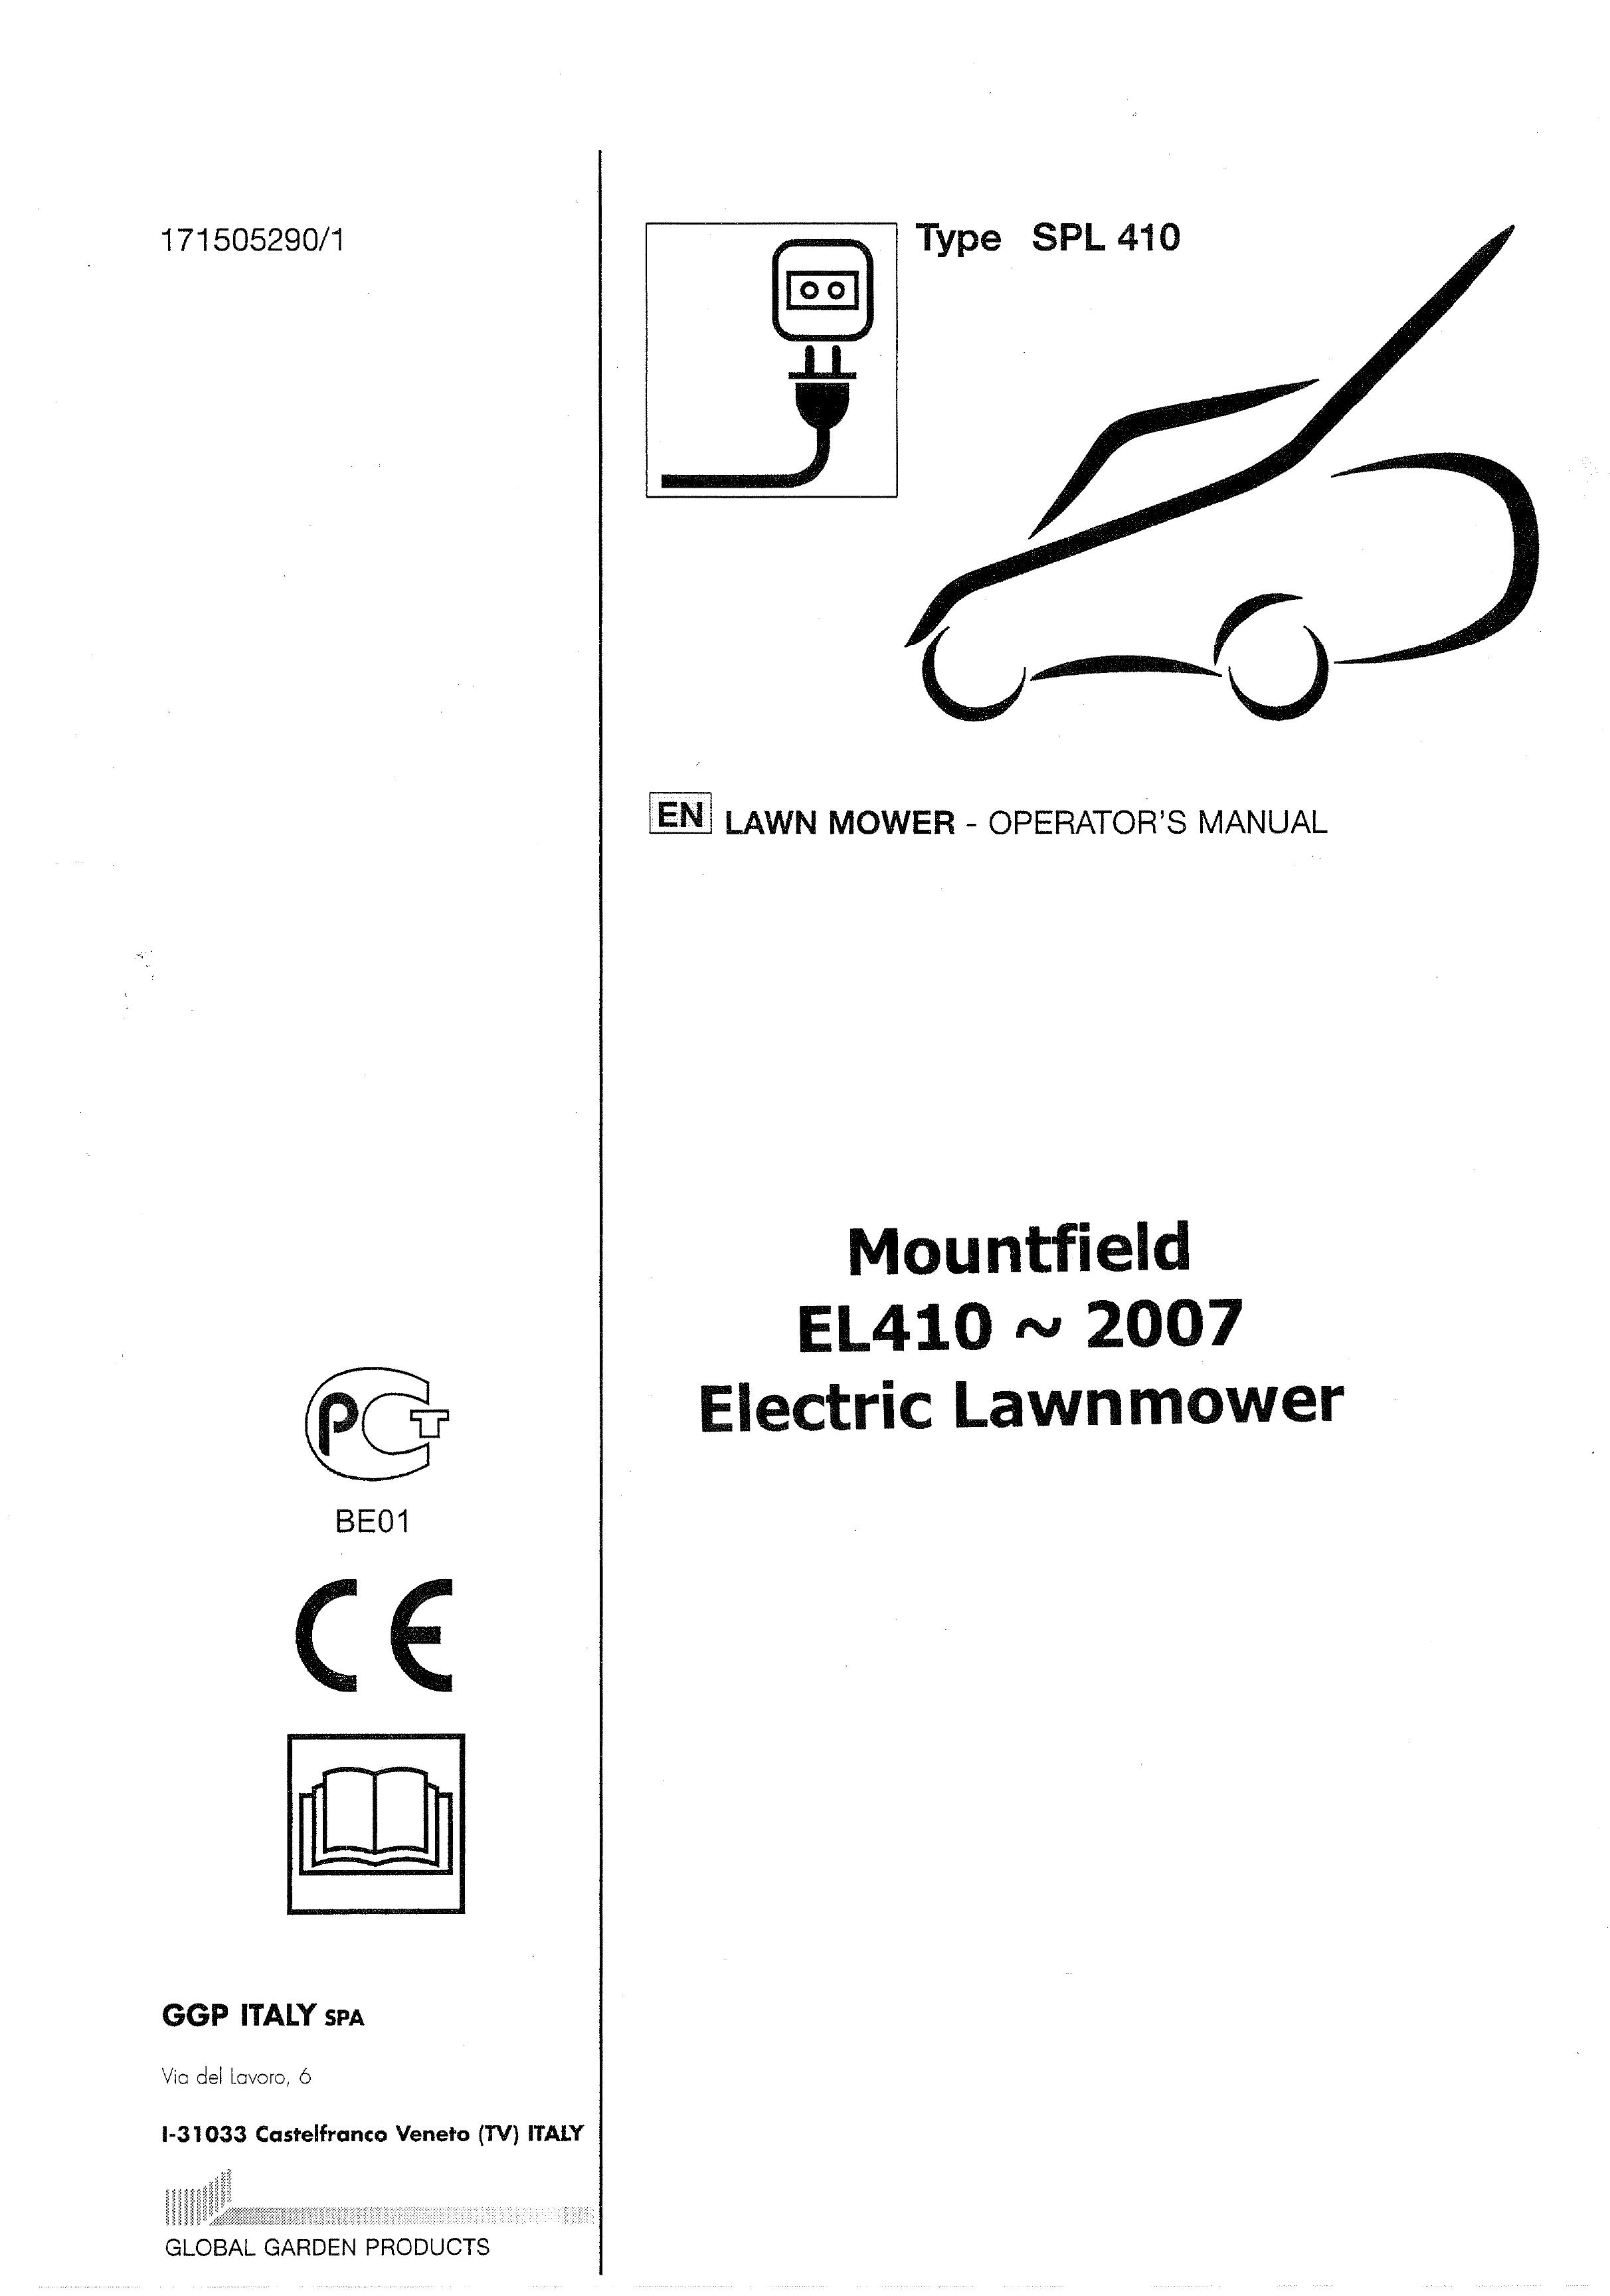 Mountfield EL 410 Lawn Mower User Manual